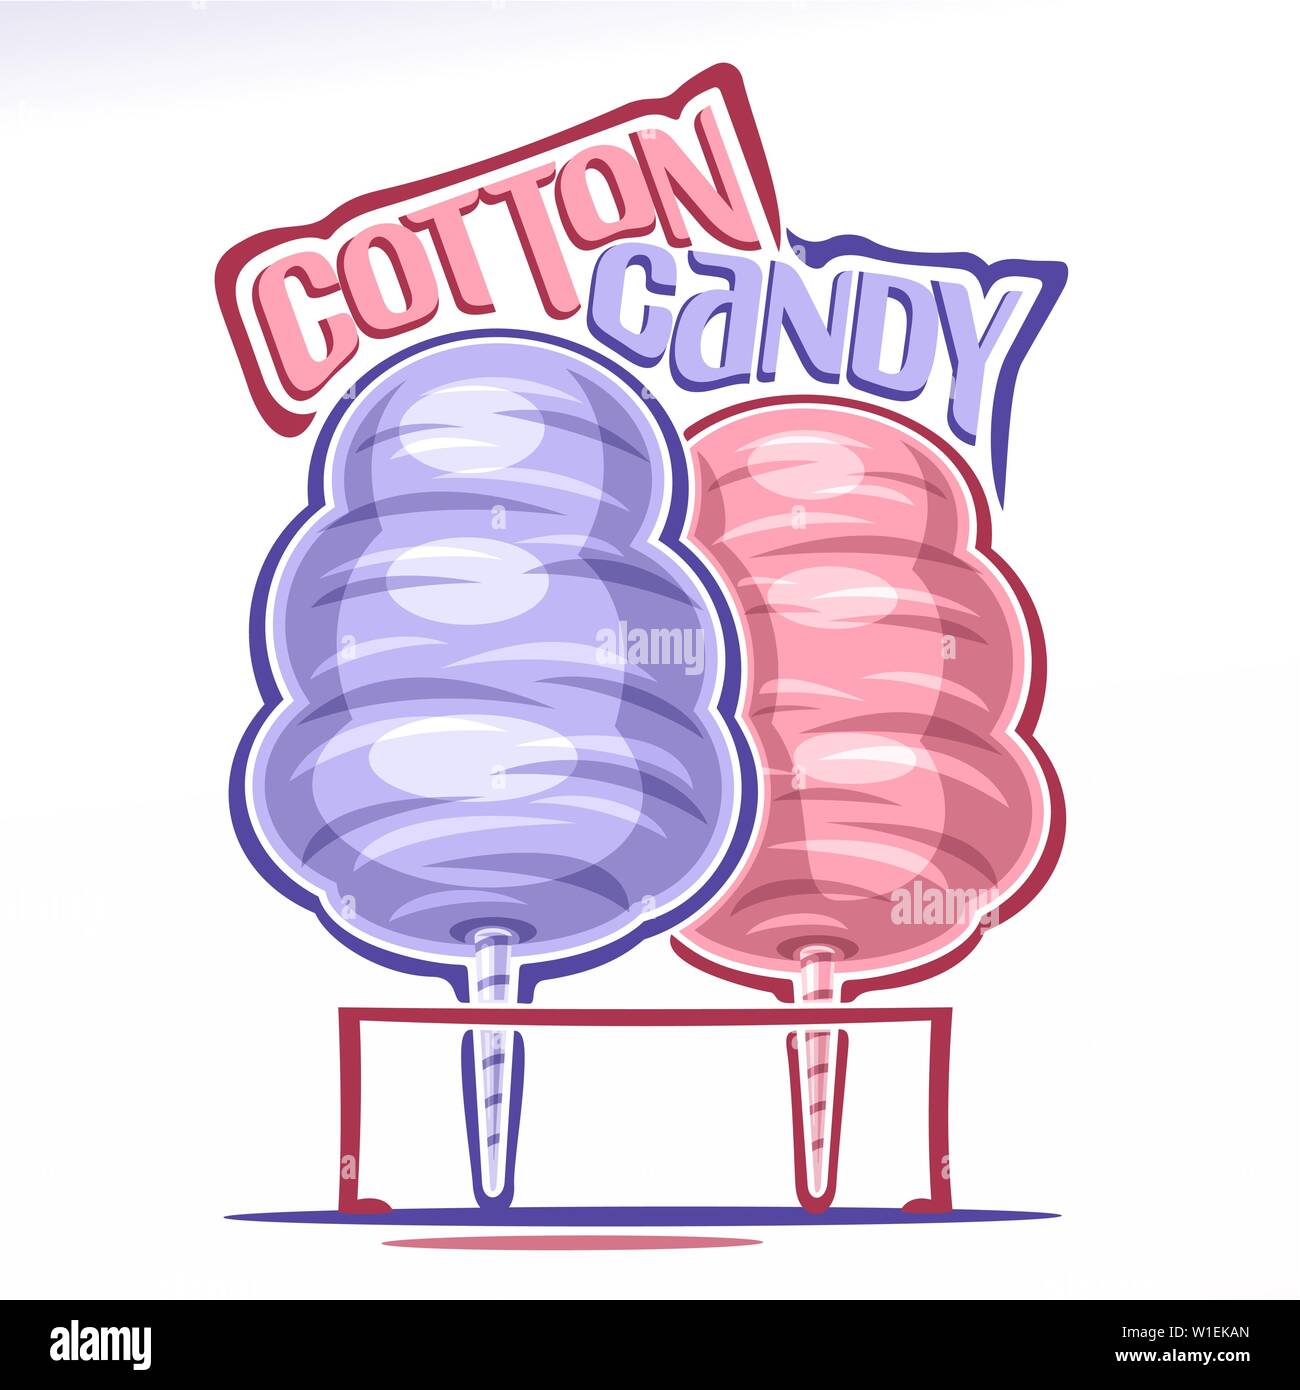 Vector logo for Cotton Candy Stock Vector